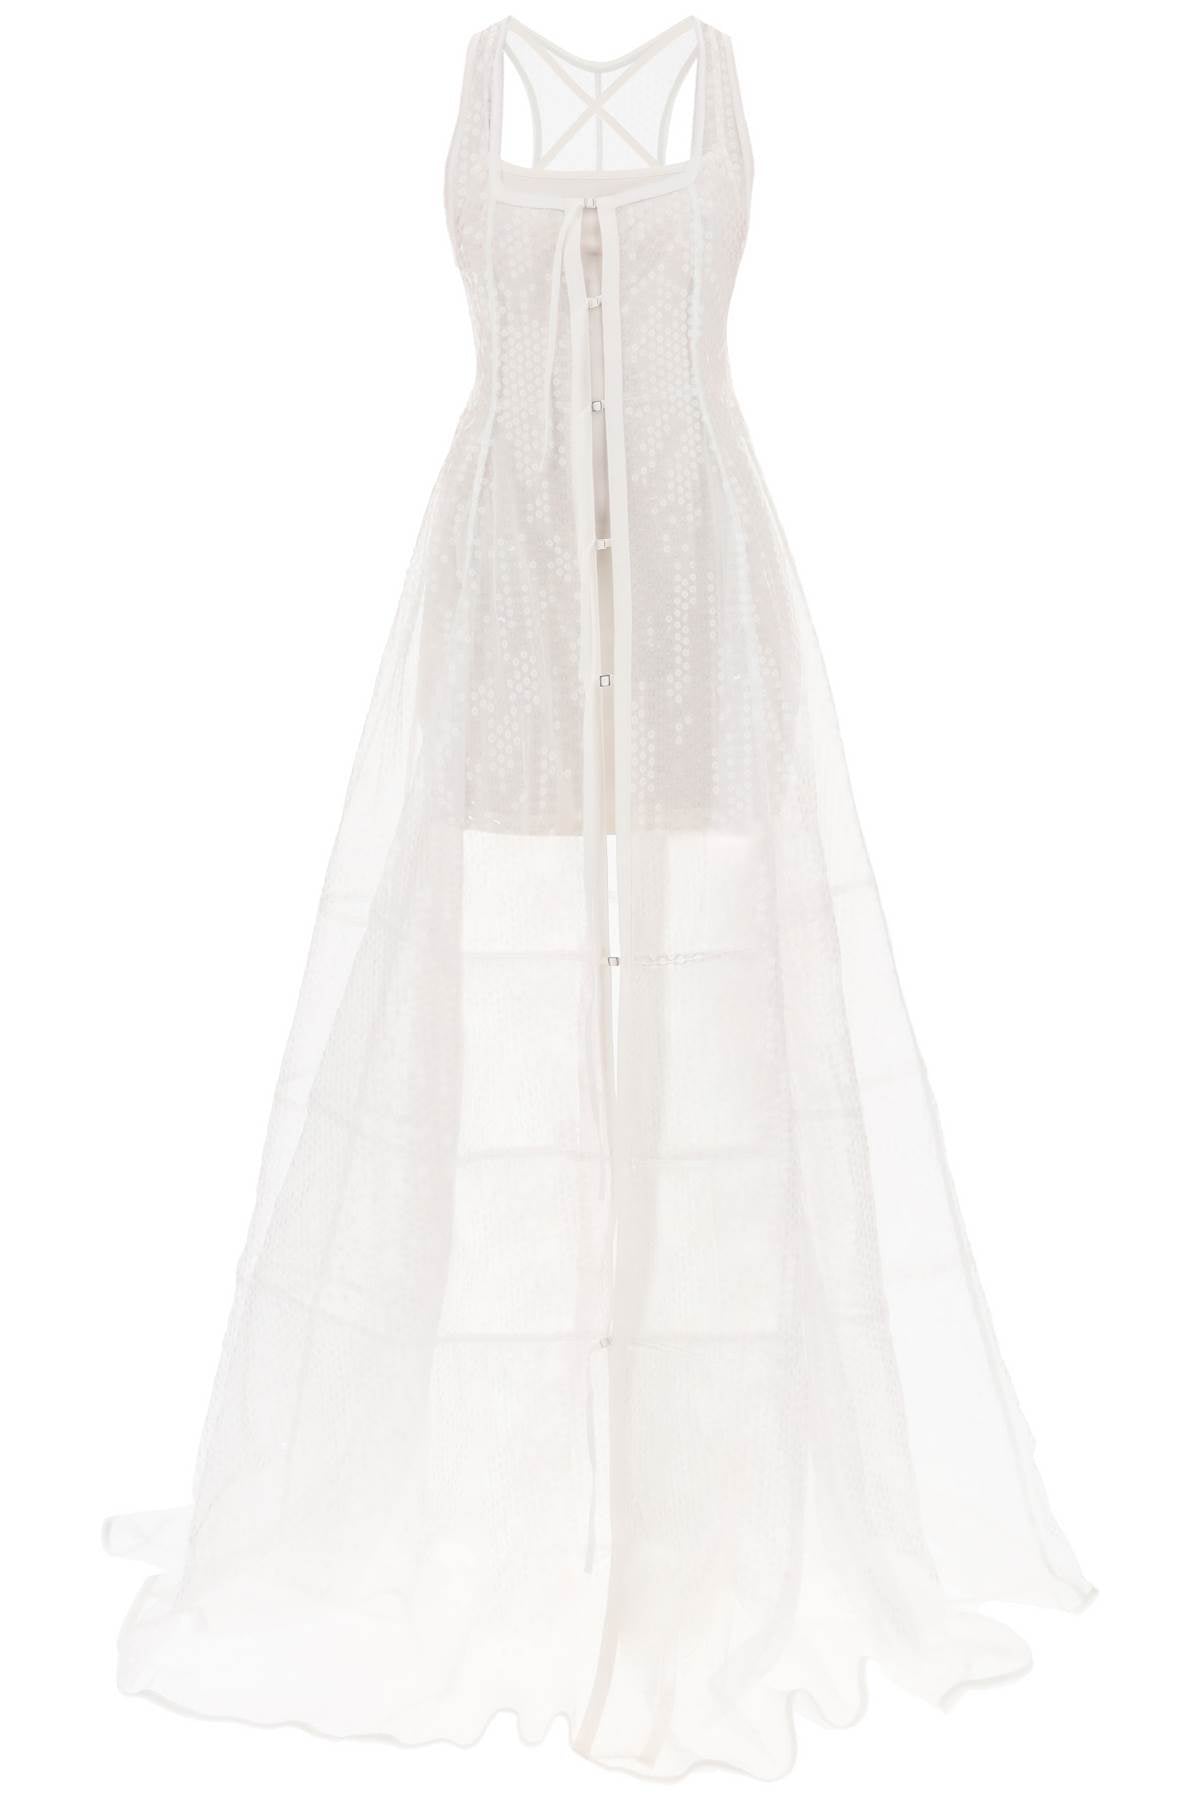 فستان نجليجي رائع بتطريزات من كوليكشنFW23 باللون الأبيض للنساء